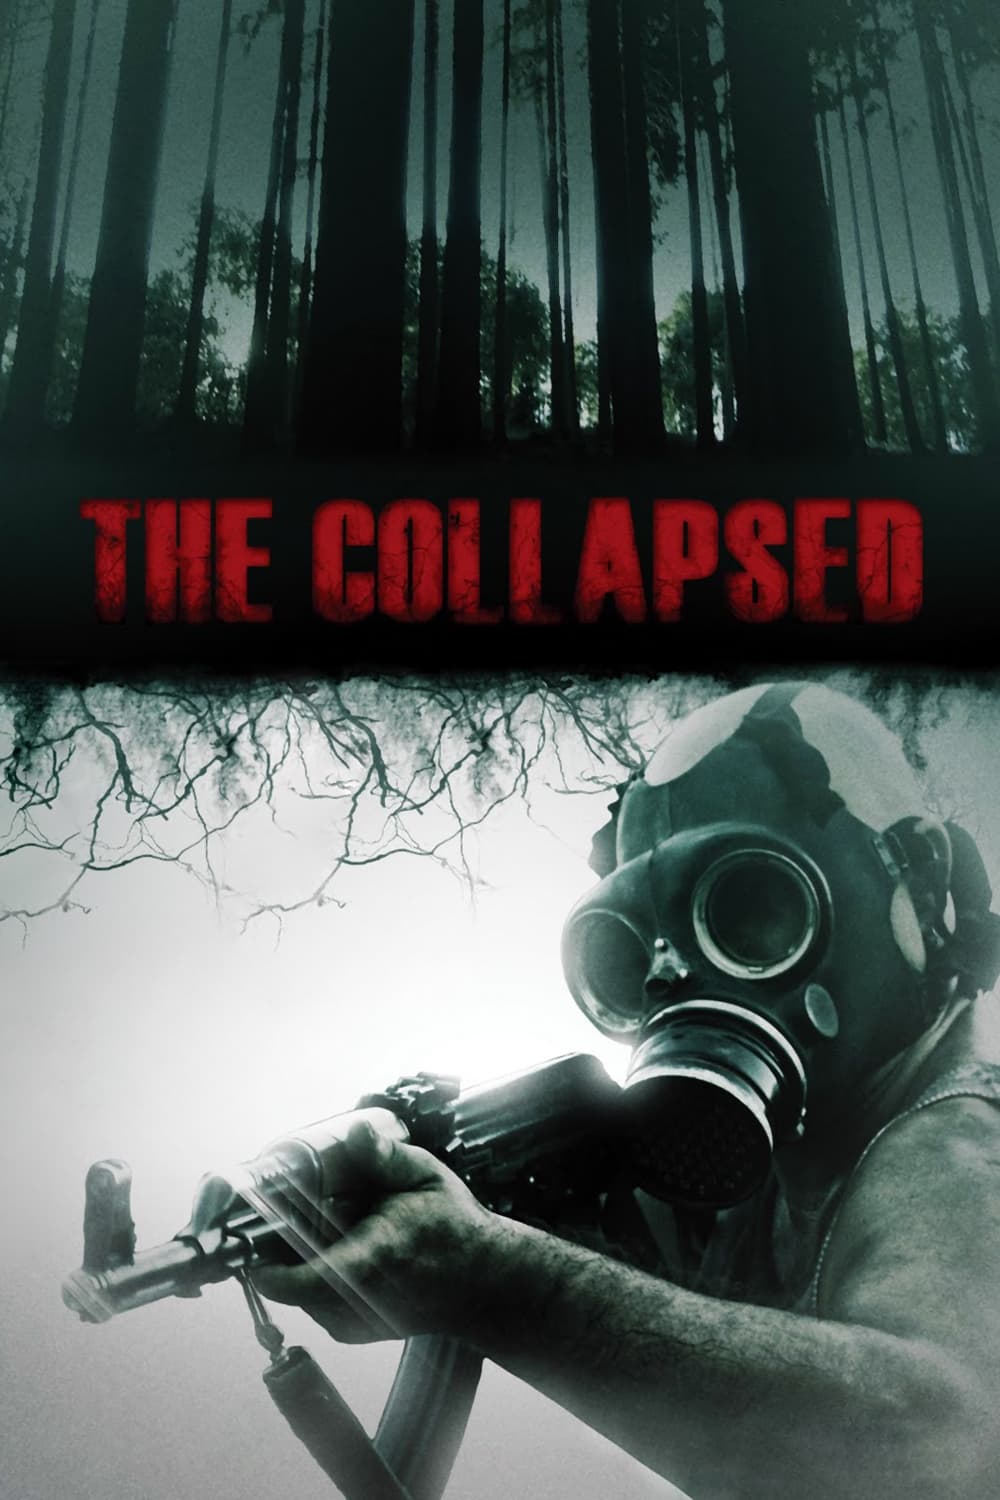 The Collapsed [Sub-ITA] (2012)